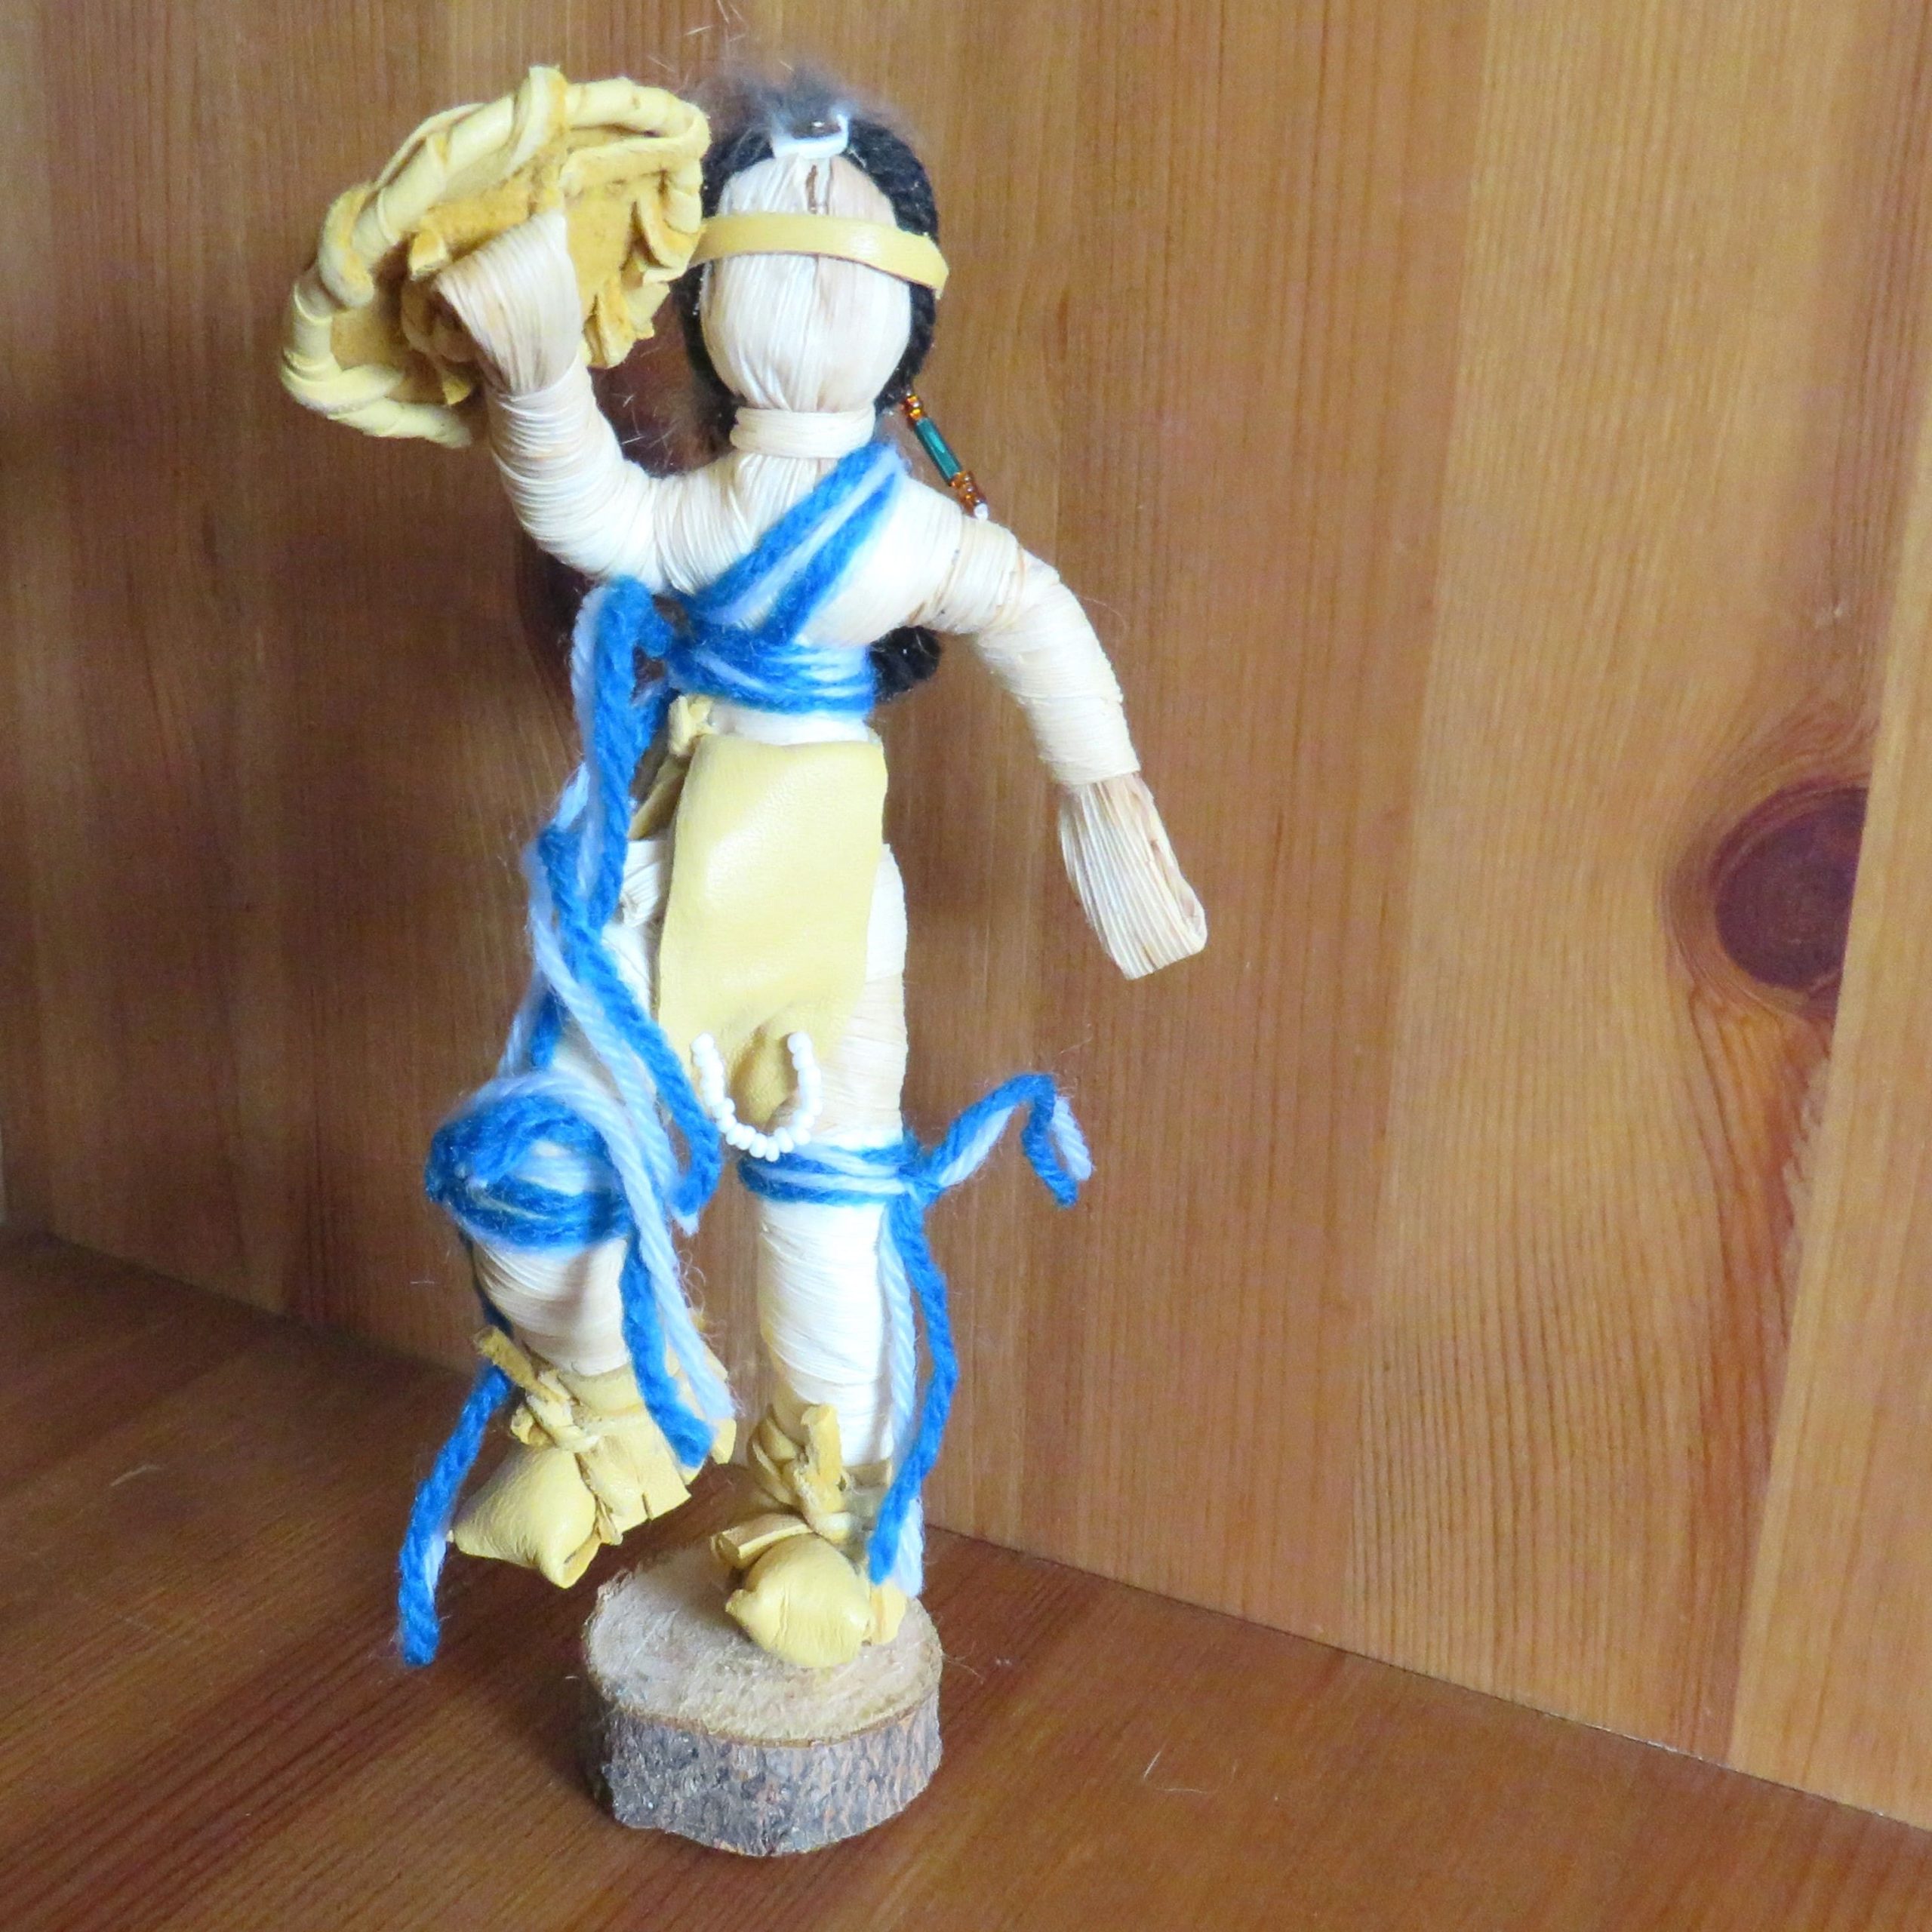 Tradiotionele maispop (corn husk doll) – Shield danser